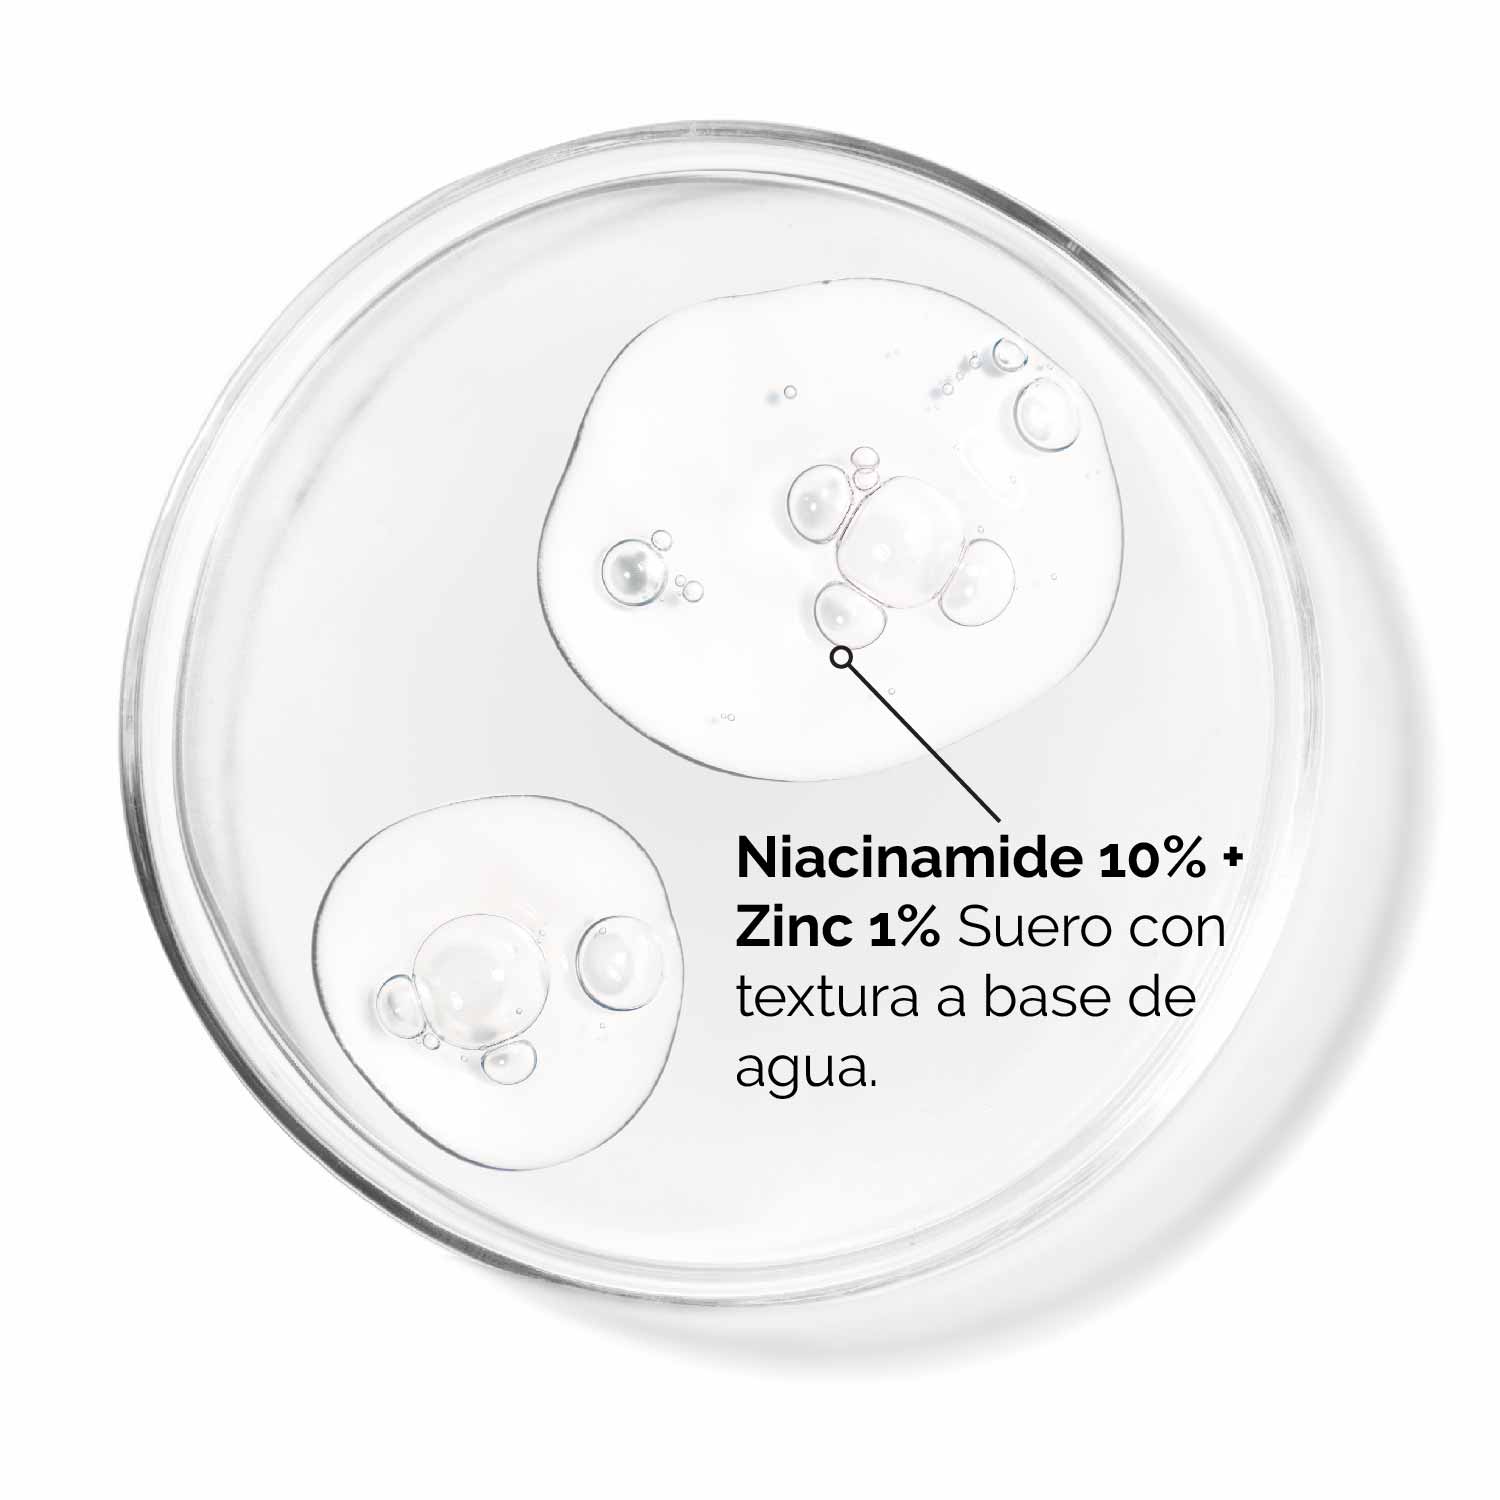 NIACINAMIDE 10% + ZINC 1% (SUERO PARA IMPERFECCIONES)